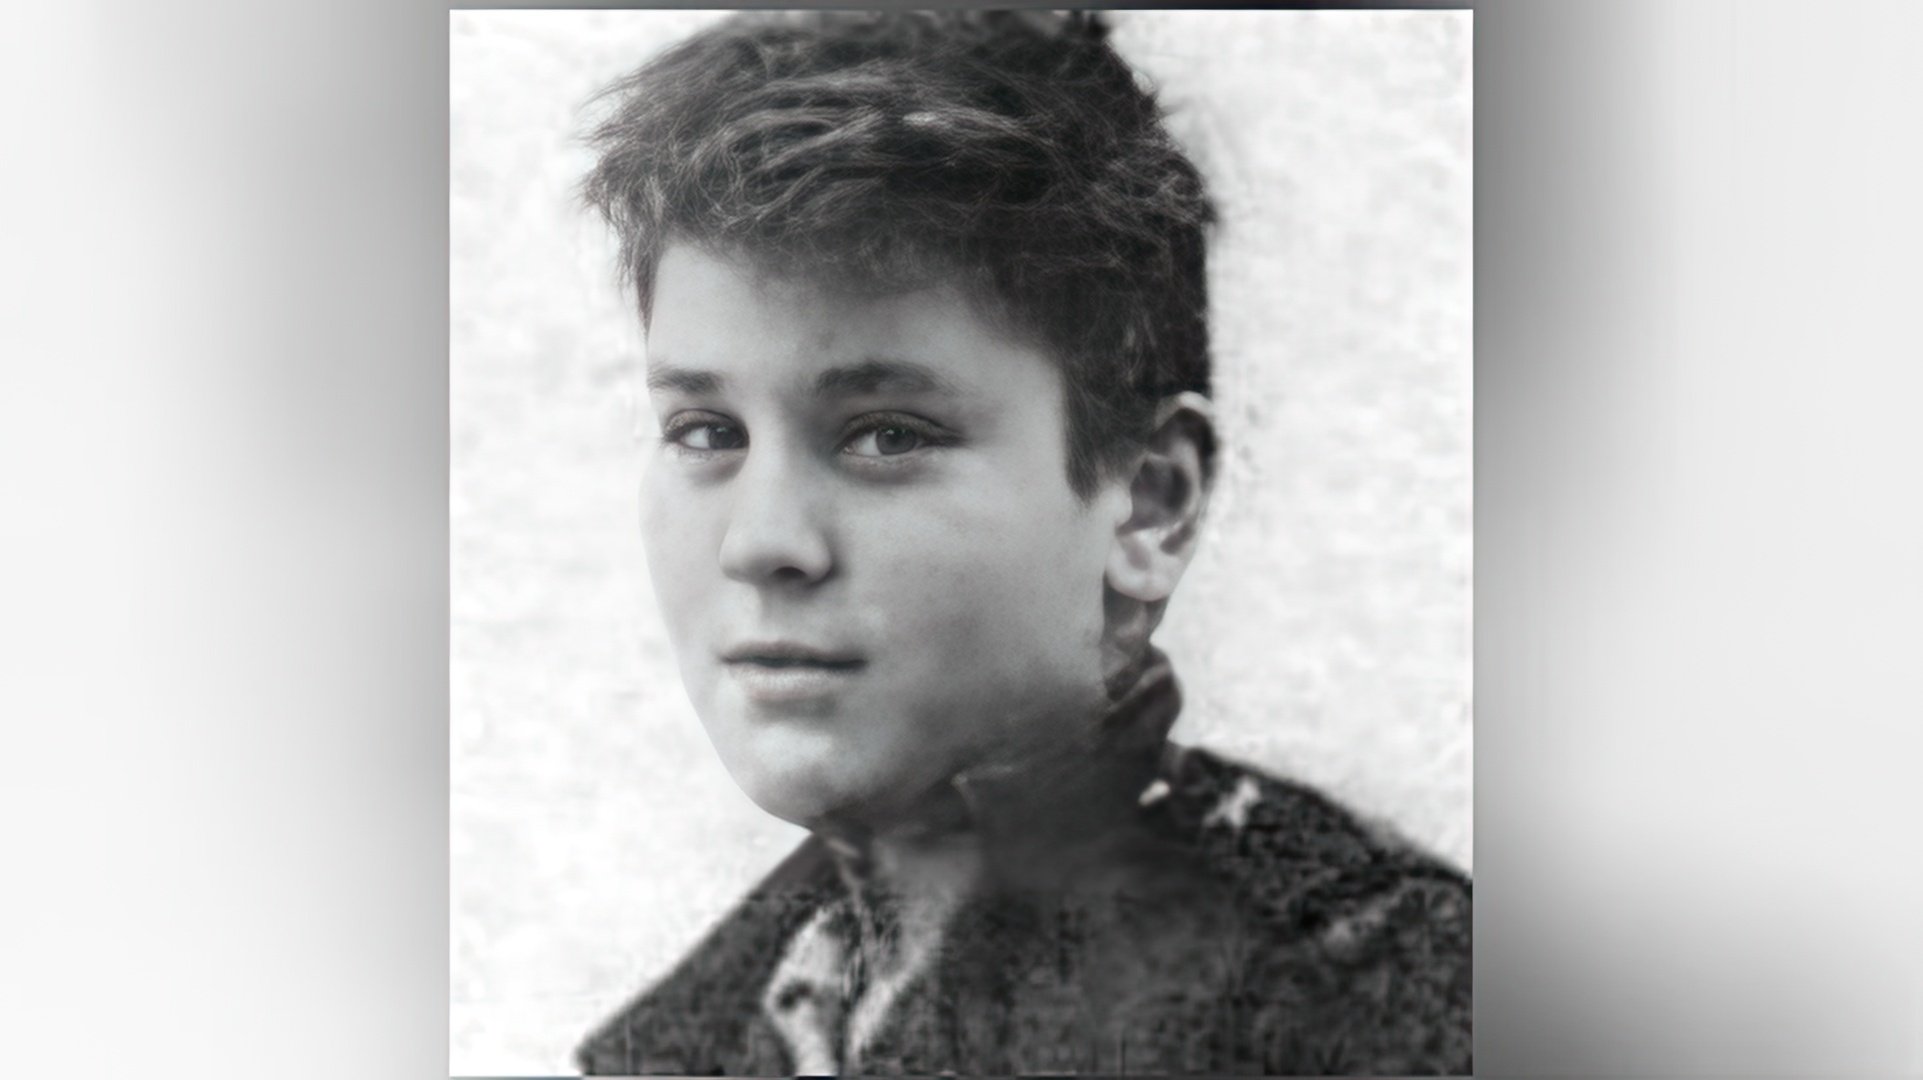 Robert De Niro during his school years